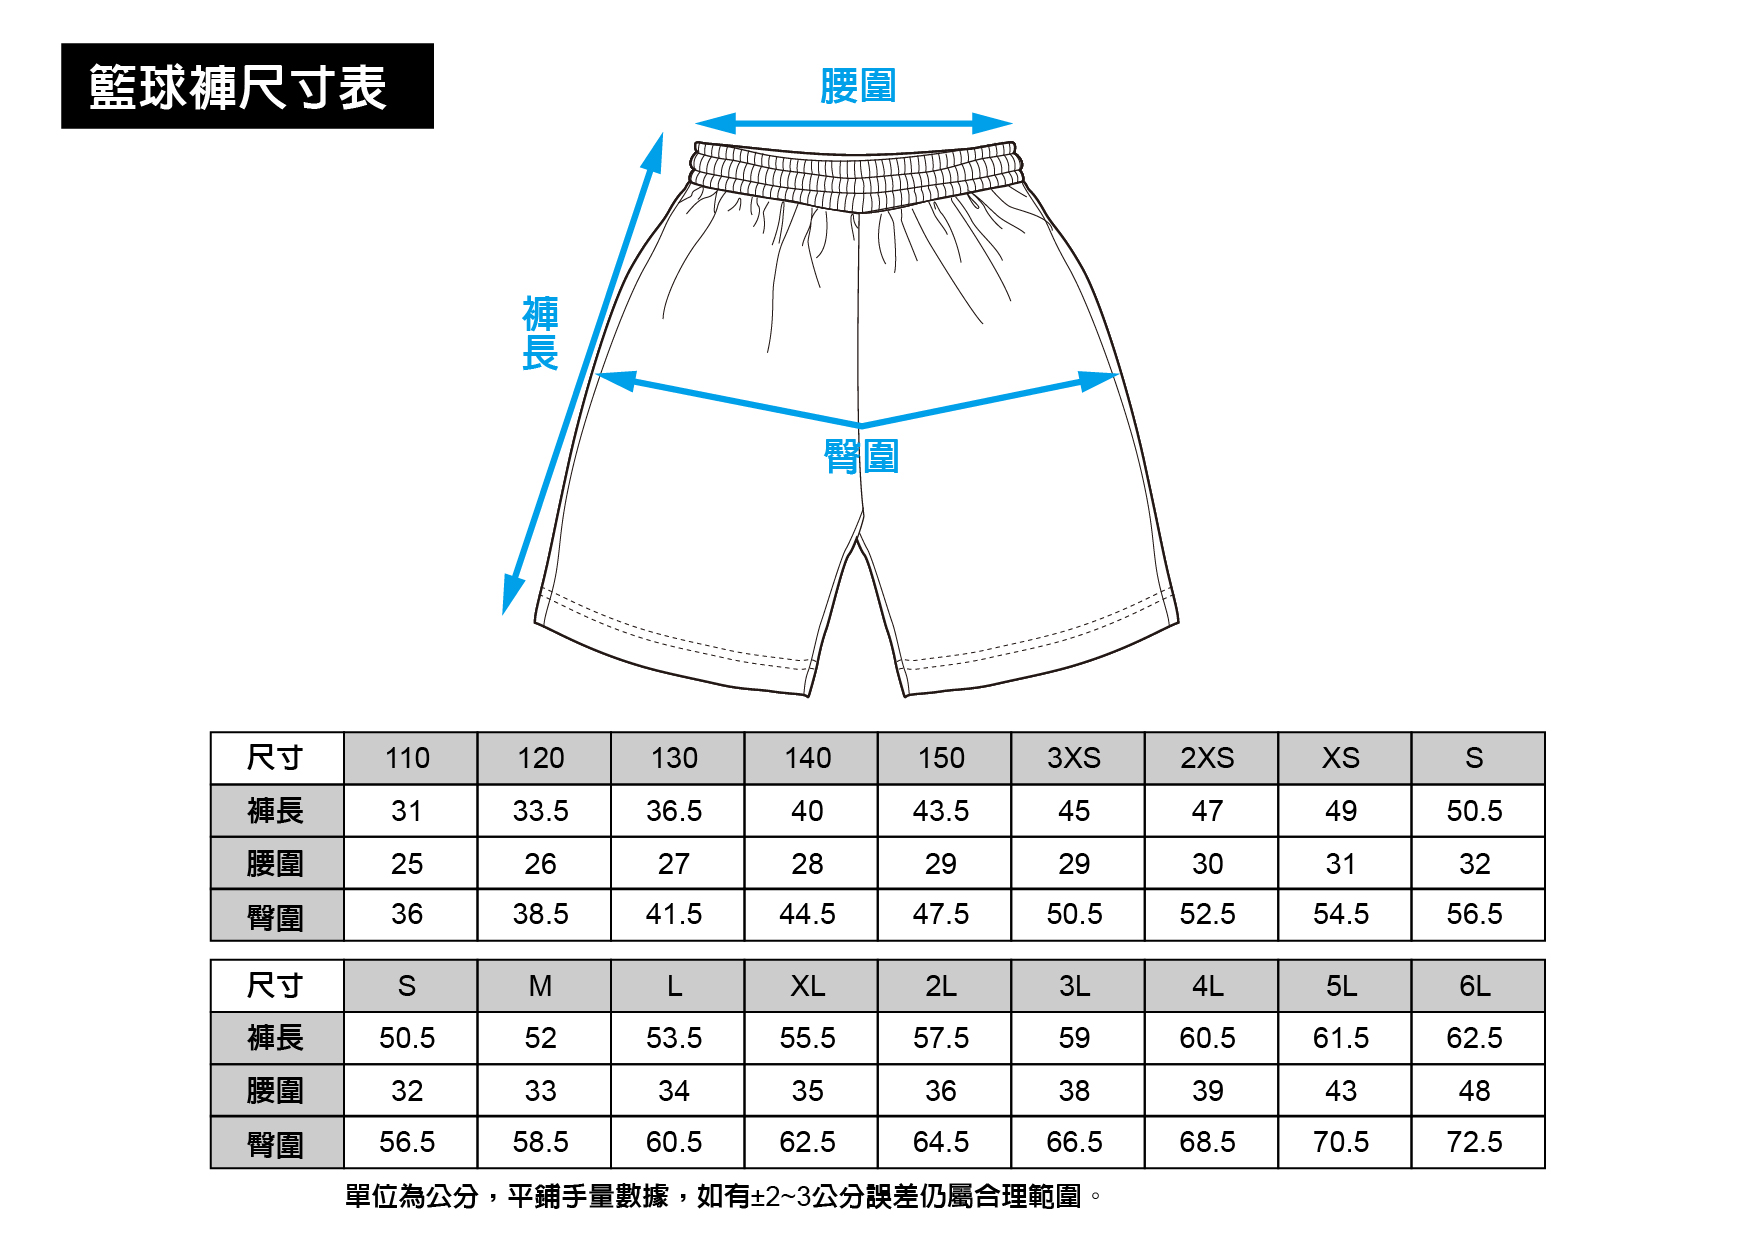 籃球褲尺寸表.jpg